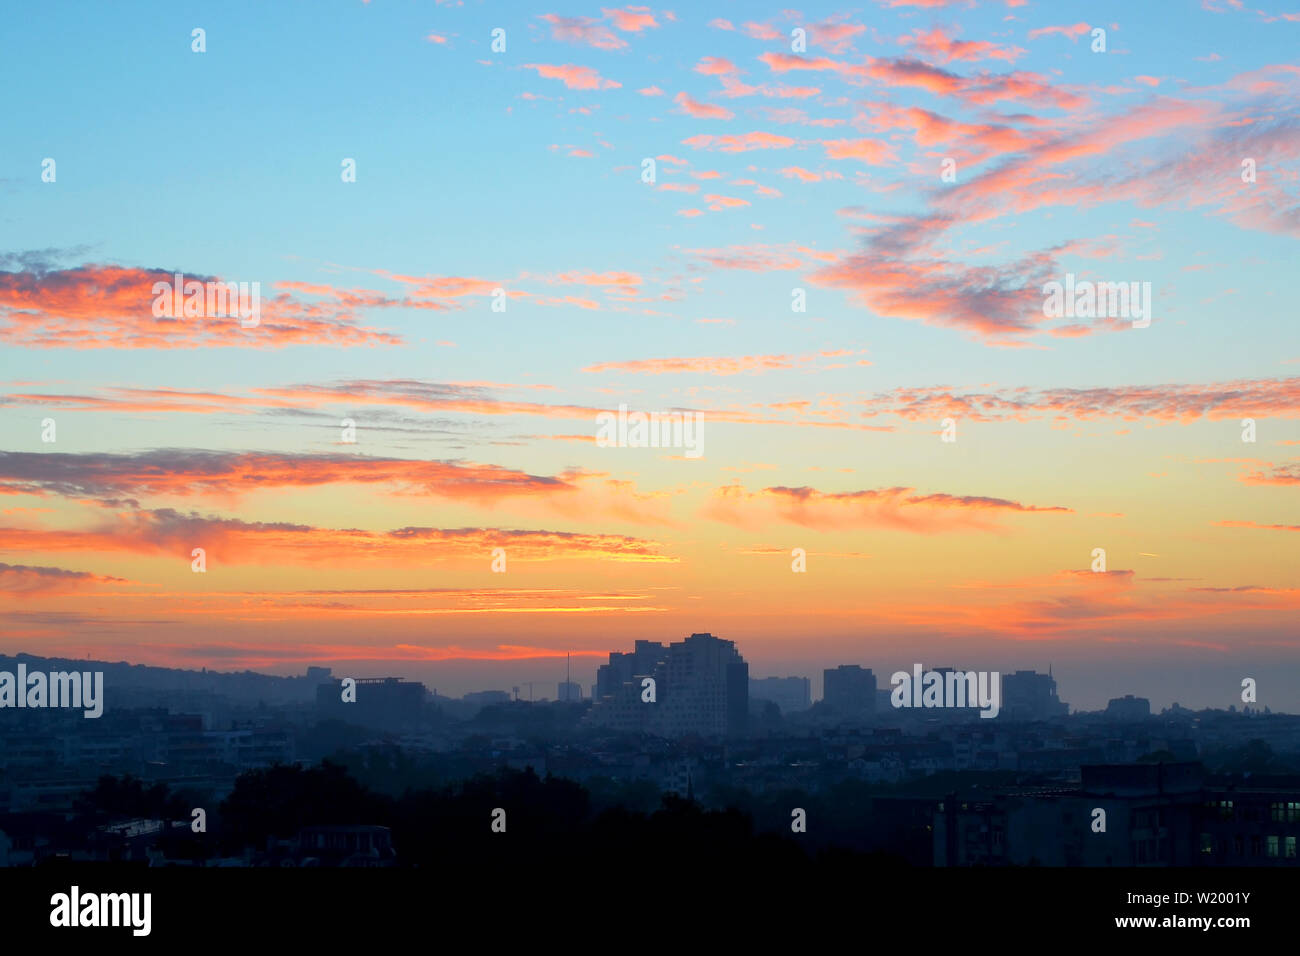 Cityscape tôt le matin : rose et orange nuages sur un ciel bleu à l'aube juste avant le lever du soleil sur la ville endormie background Banque D'Images